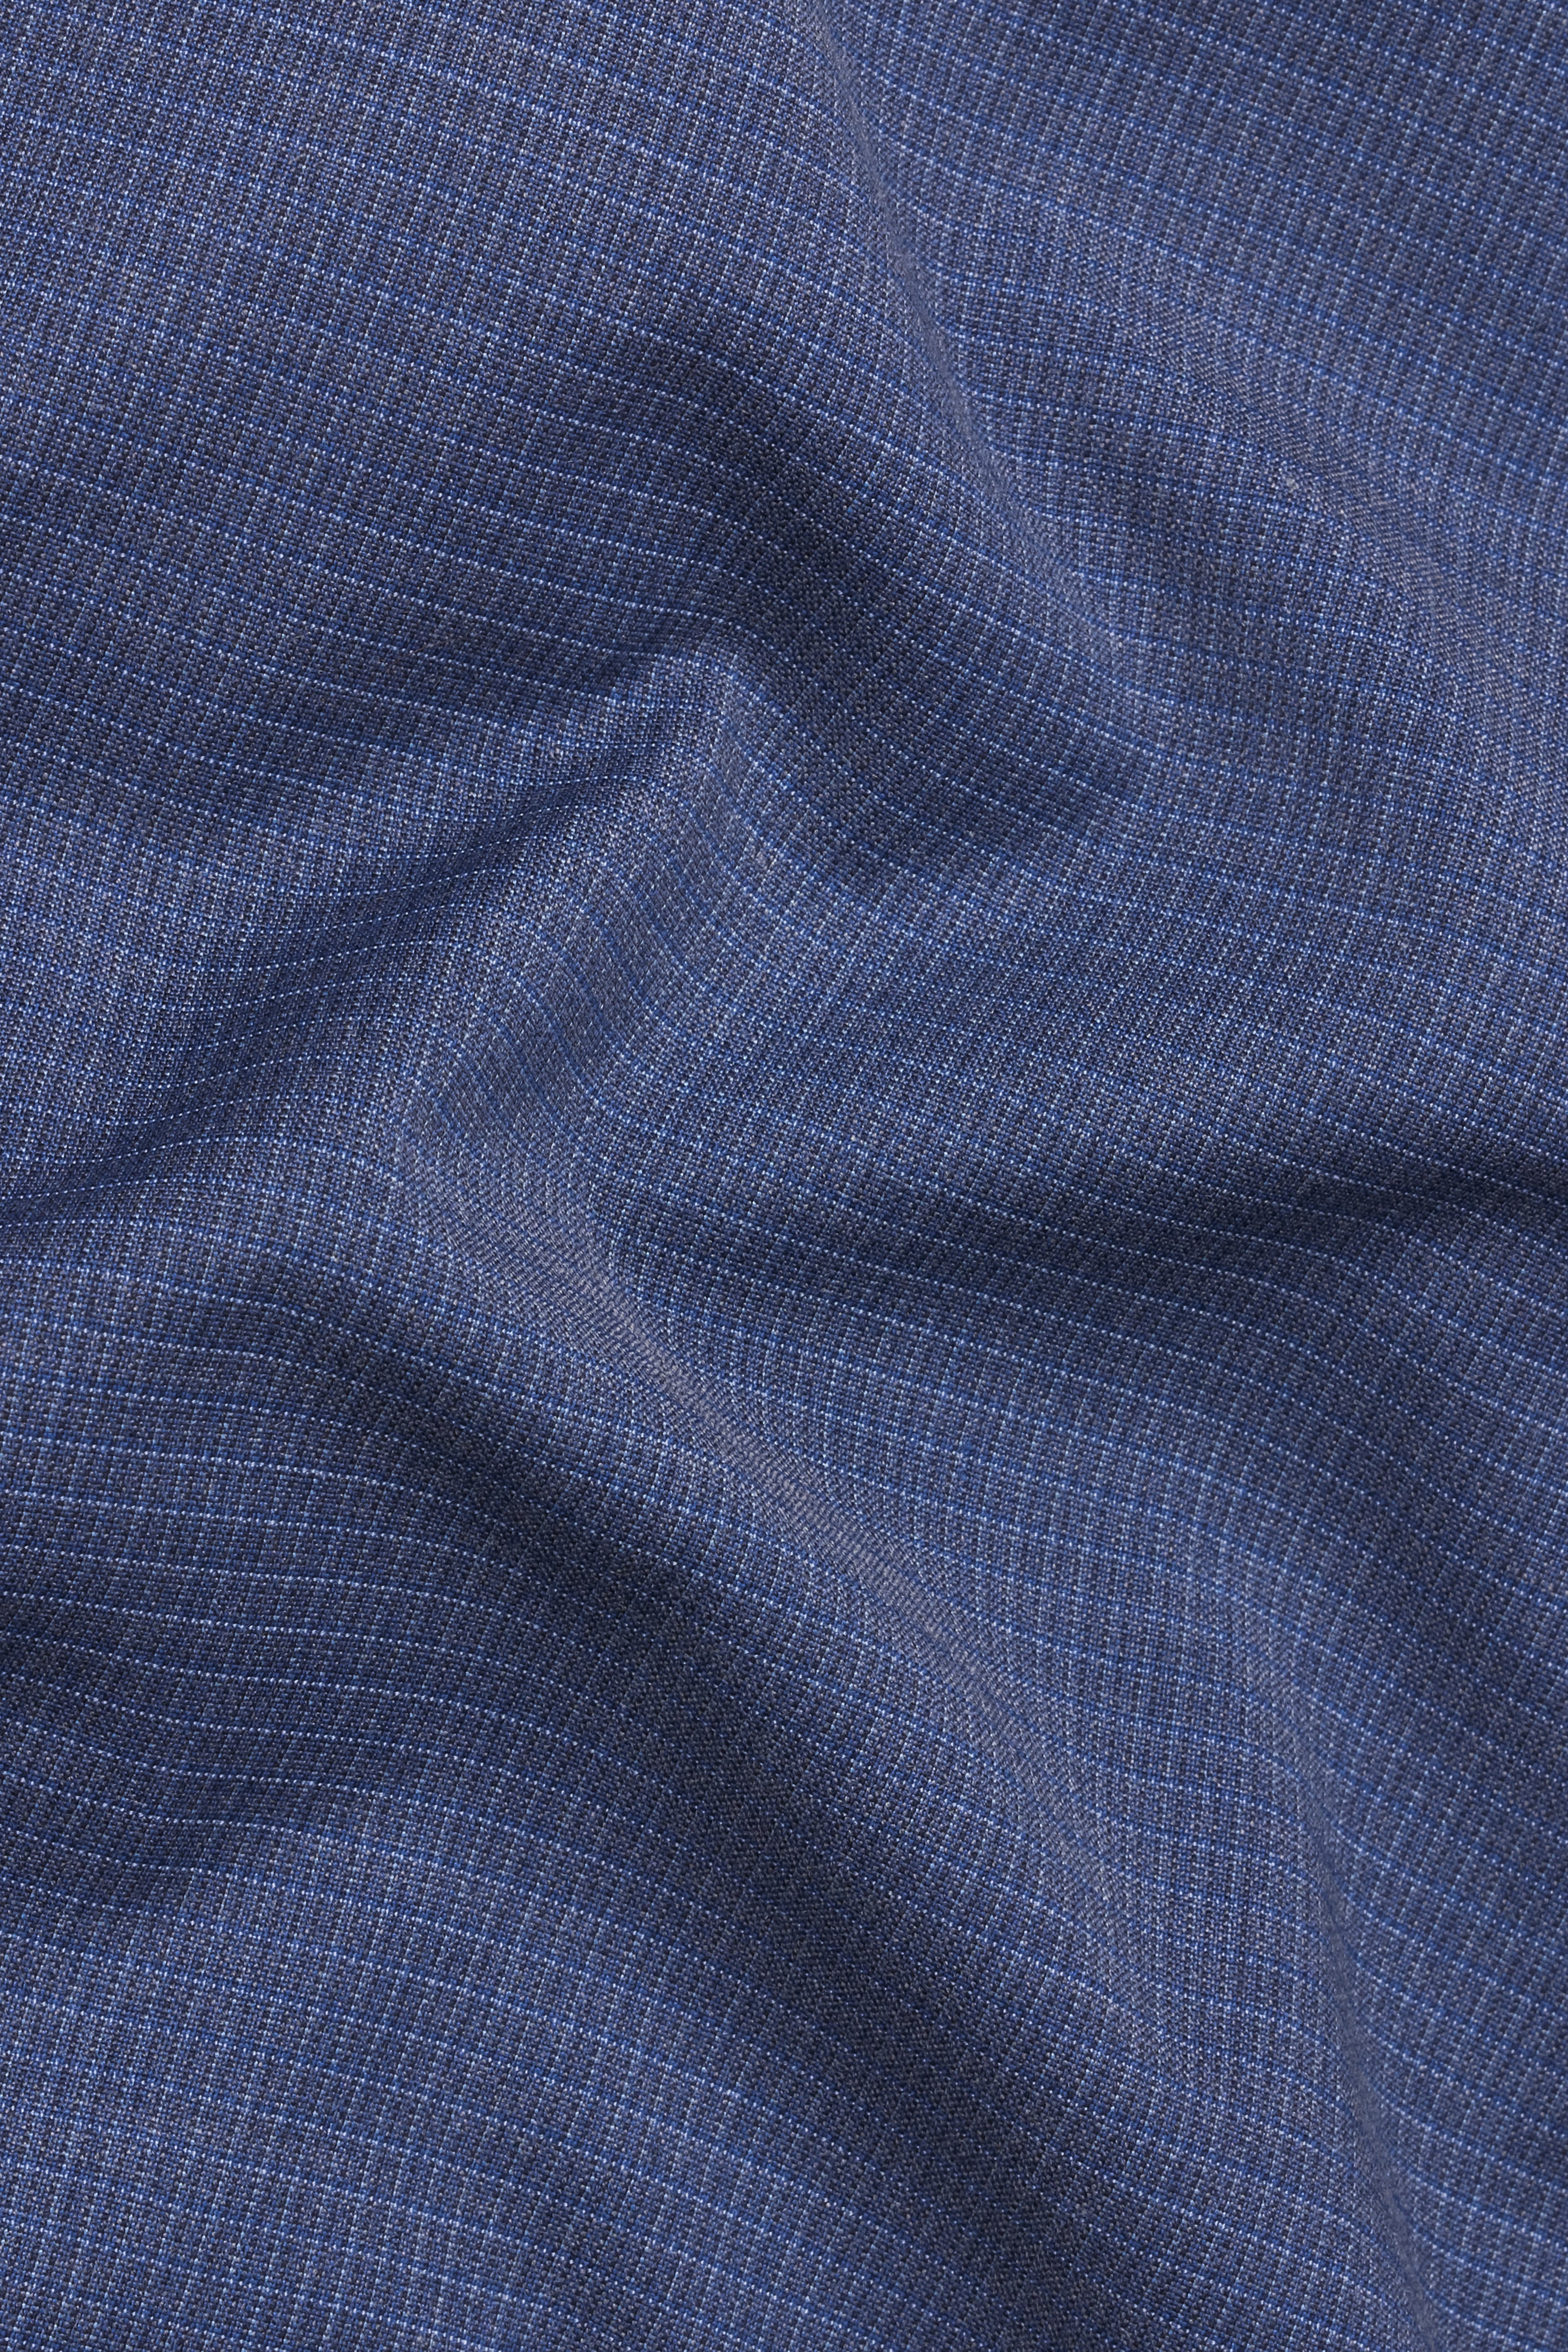 Twilight Blue Checkered Wool Rich Pant T2768-28, T2768-30, T2768-32, T2768-34, T2768-36, T2768-38, T2768-40, T2768-42, T2768-44